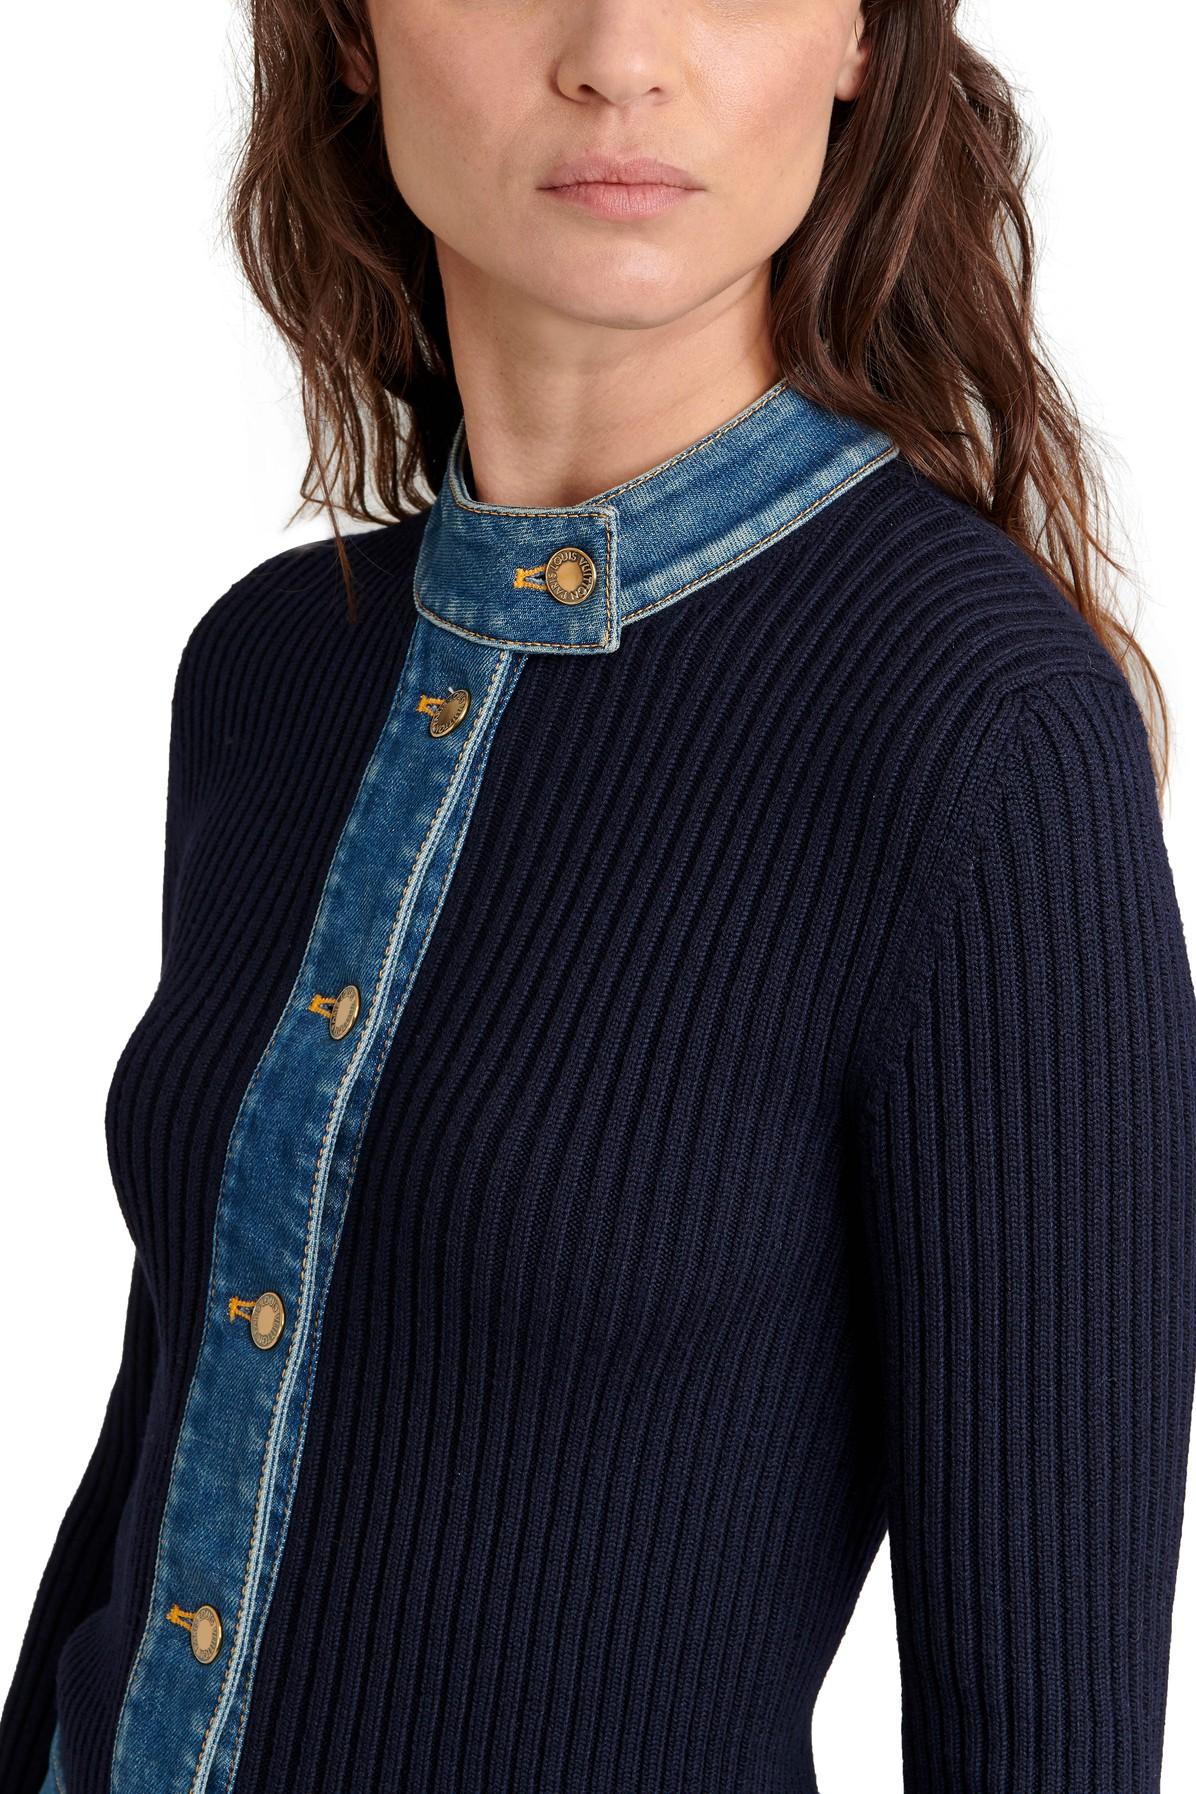 Wool mini dress Louis Vuitton Blue size L International in Wool - 31650220